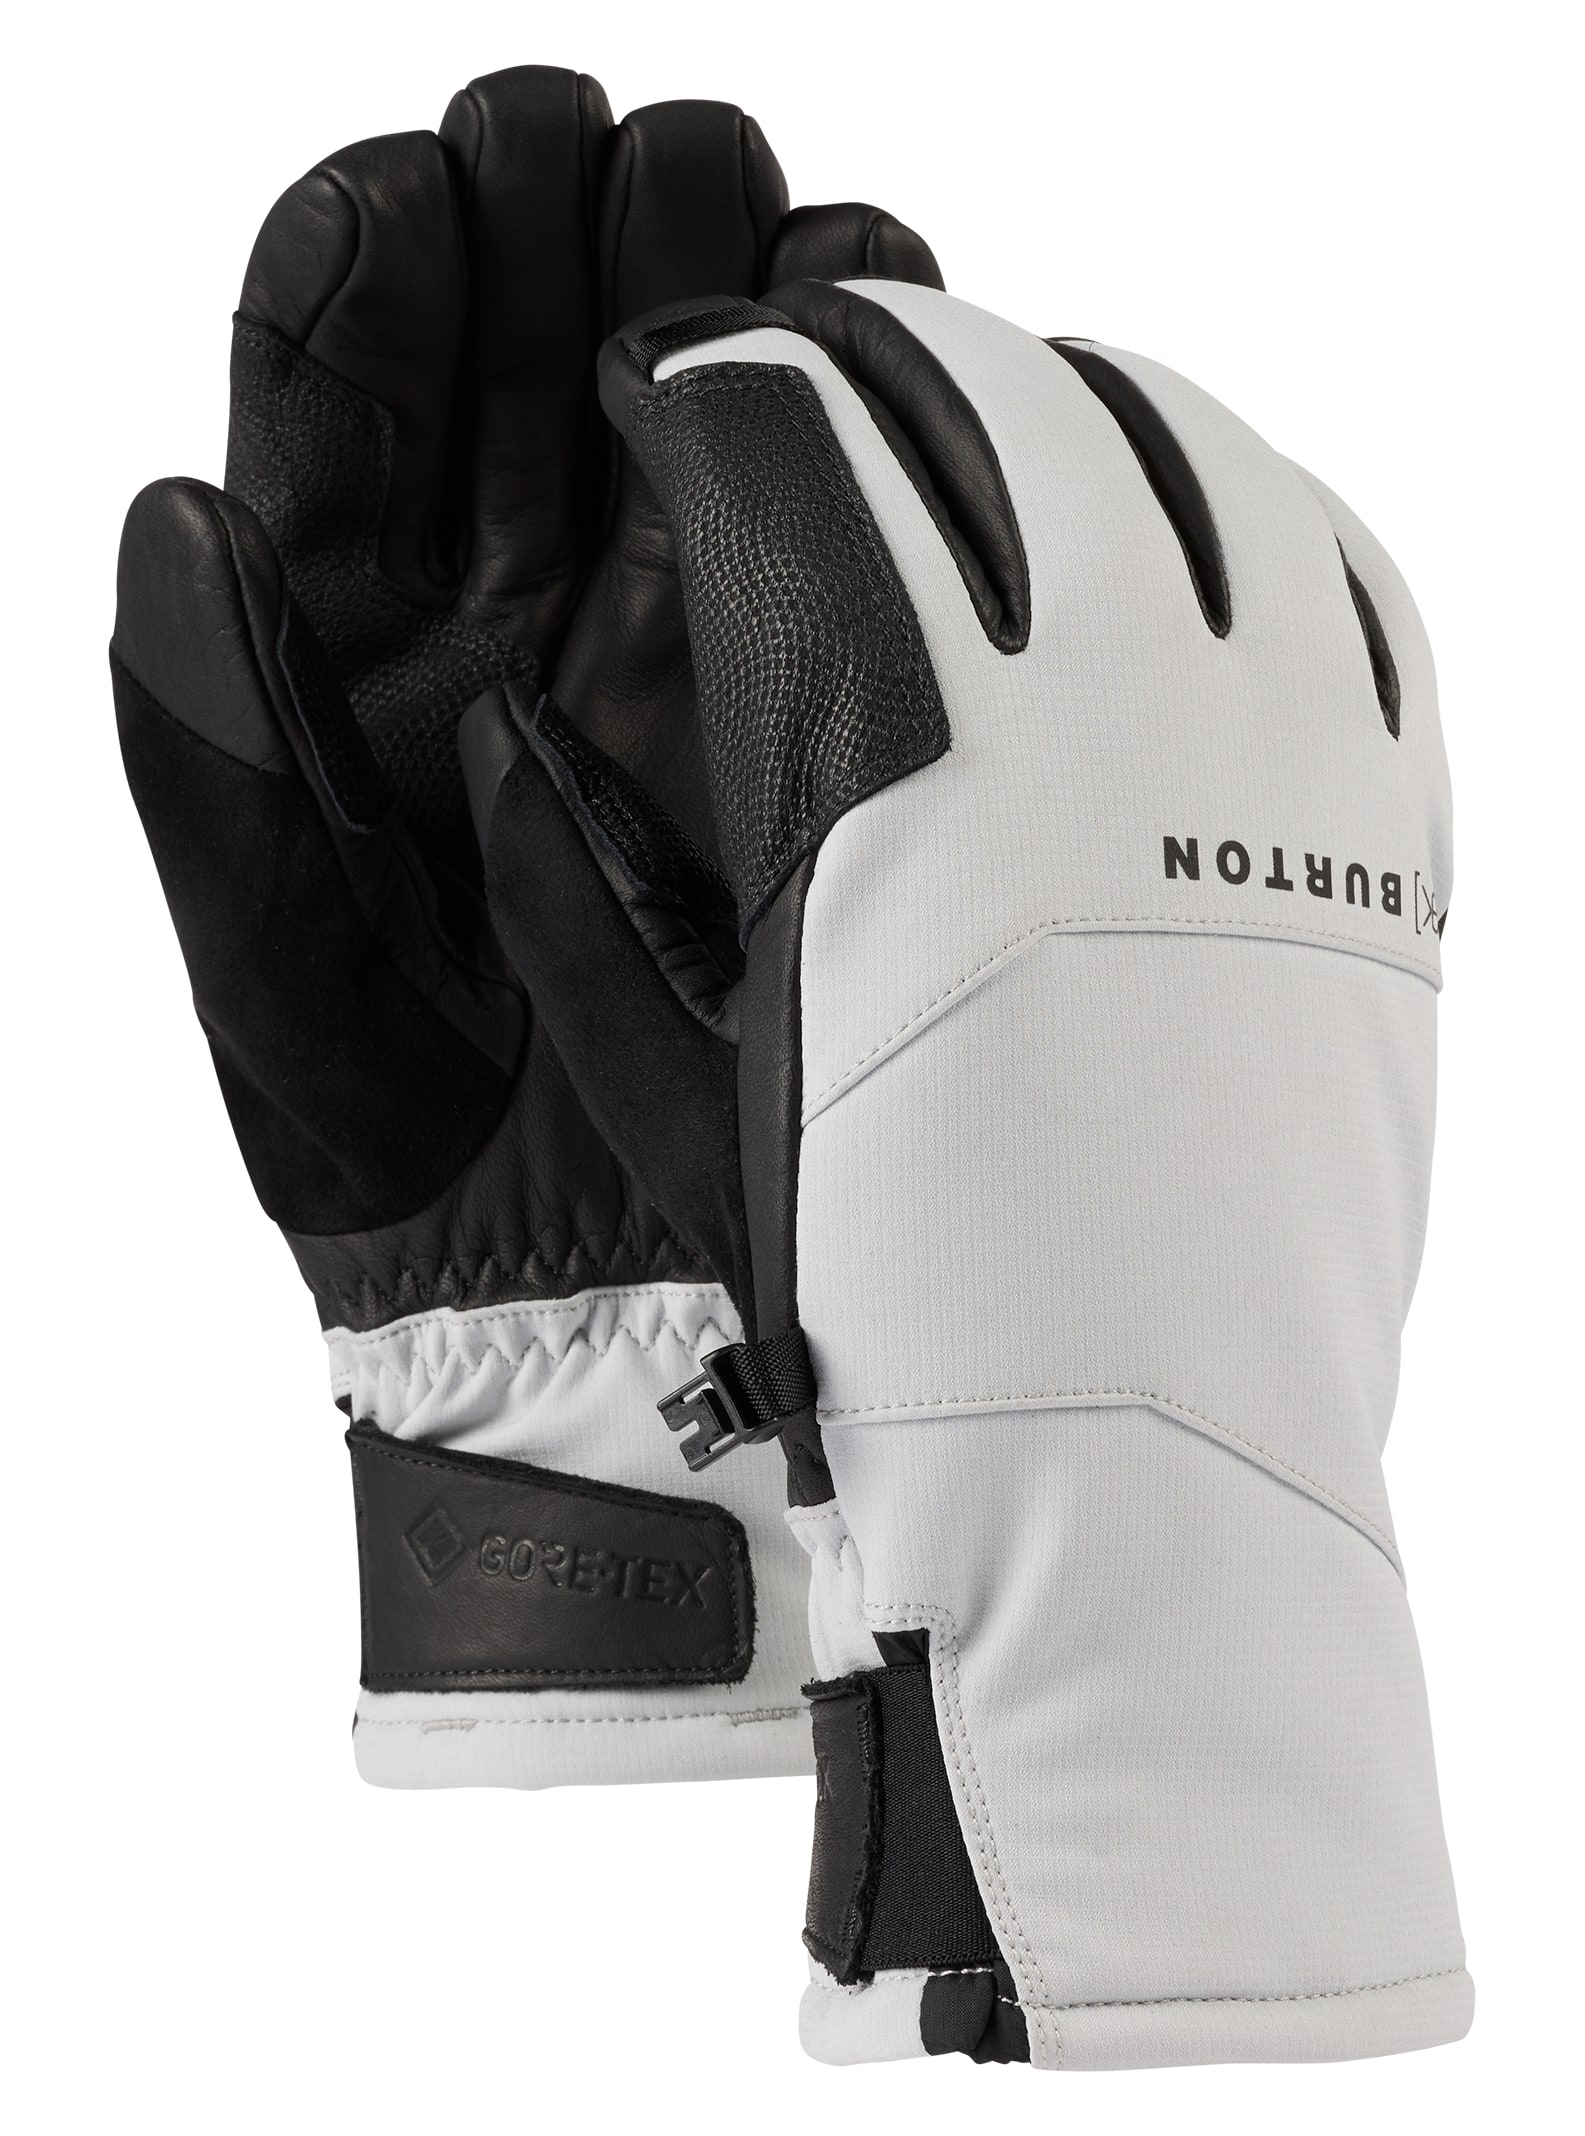 Men's Gloves & Mittens | Burton Snowboards ES